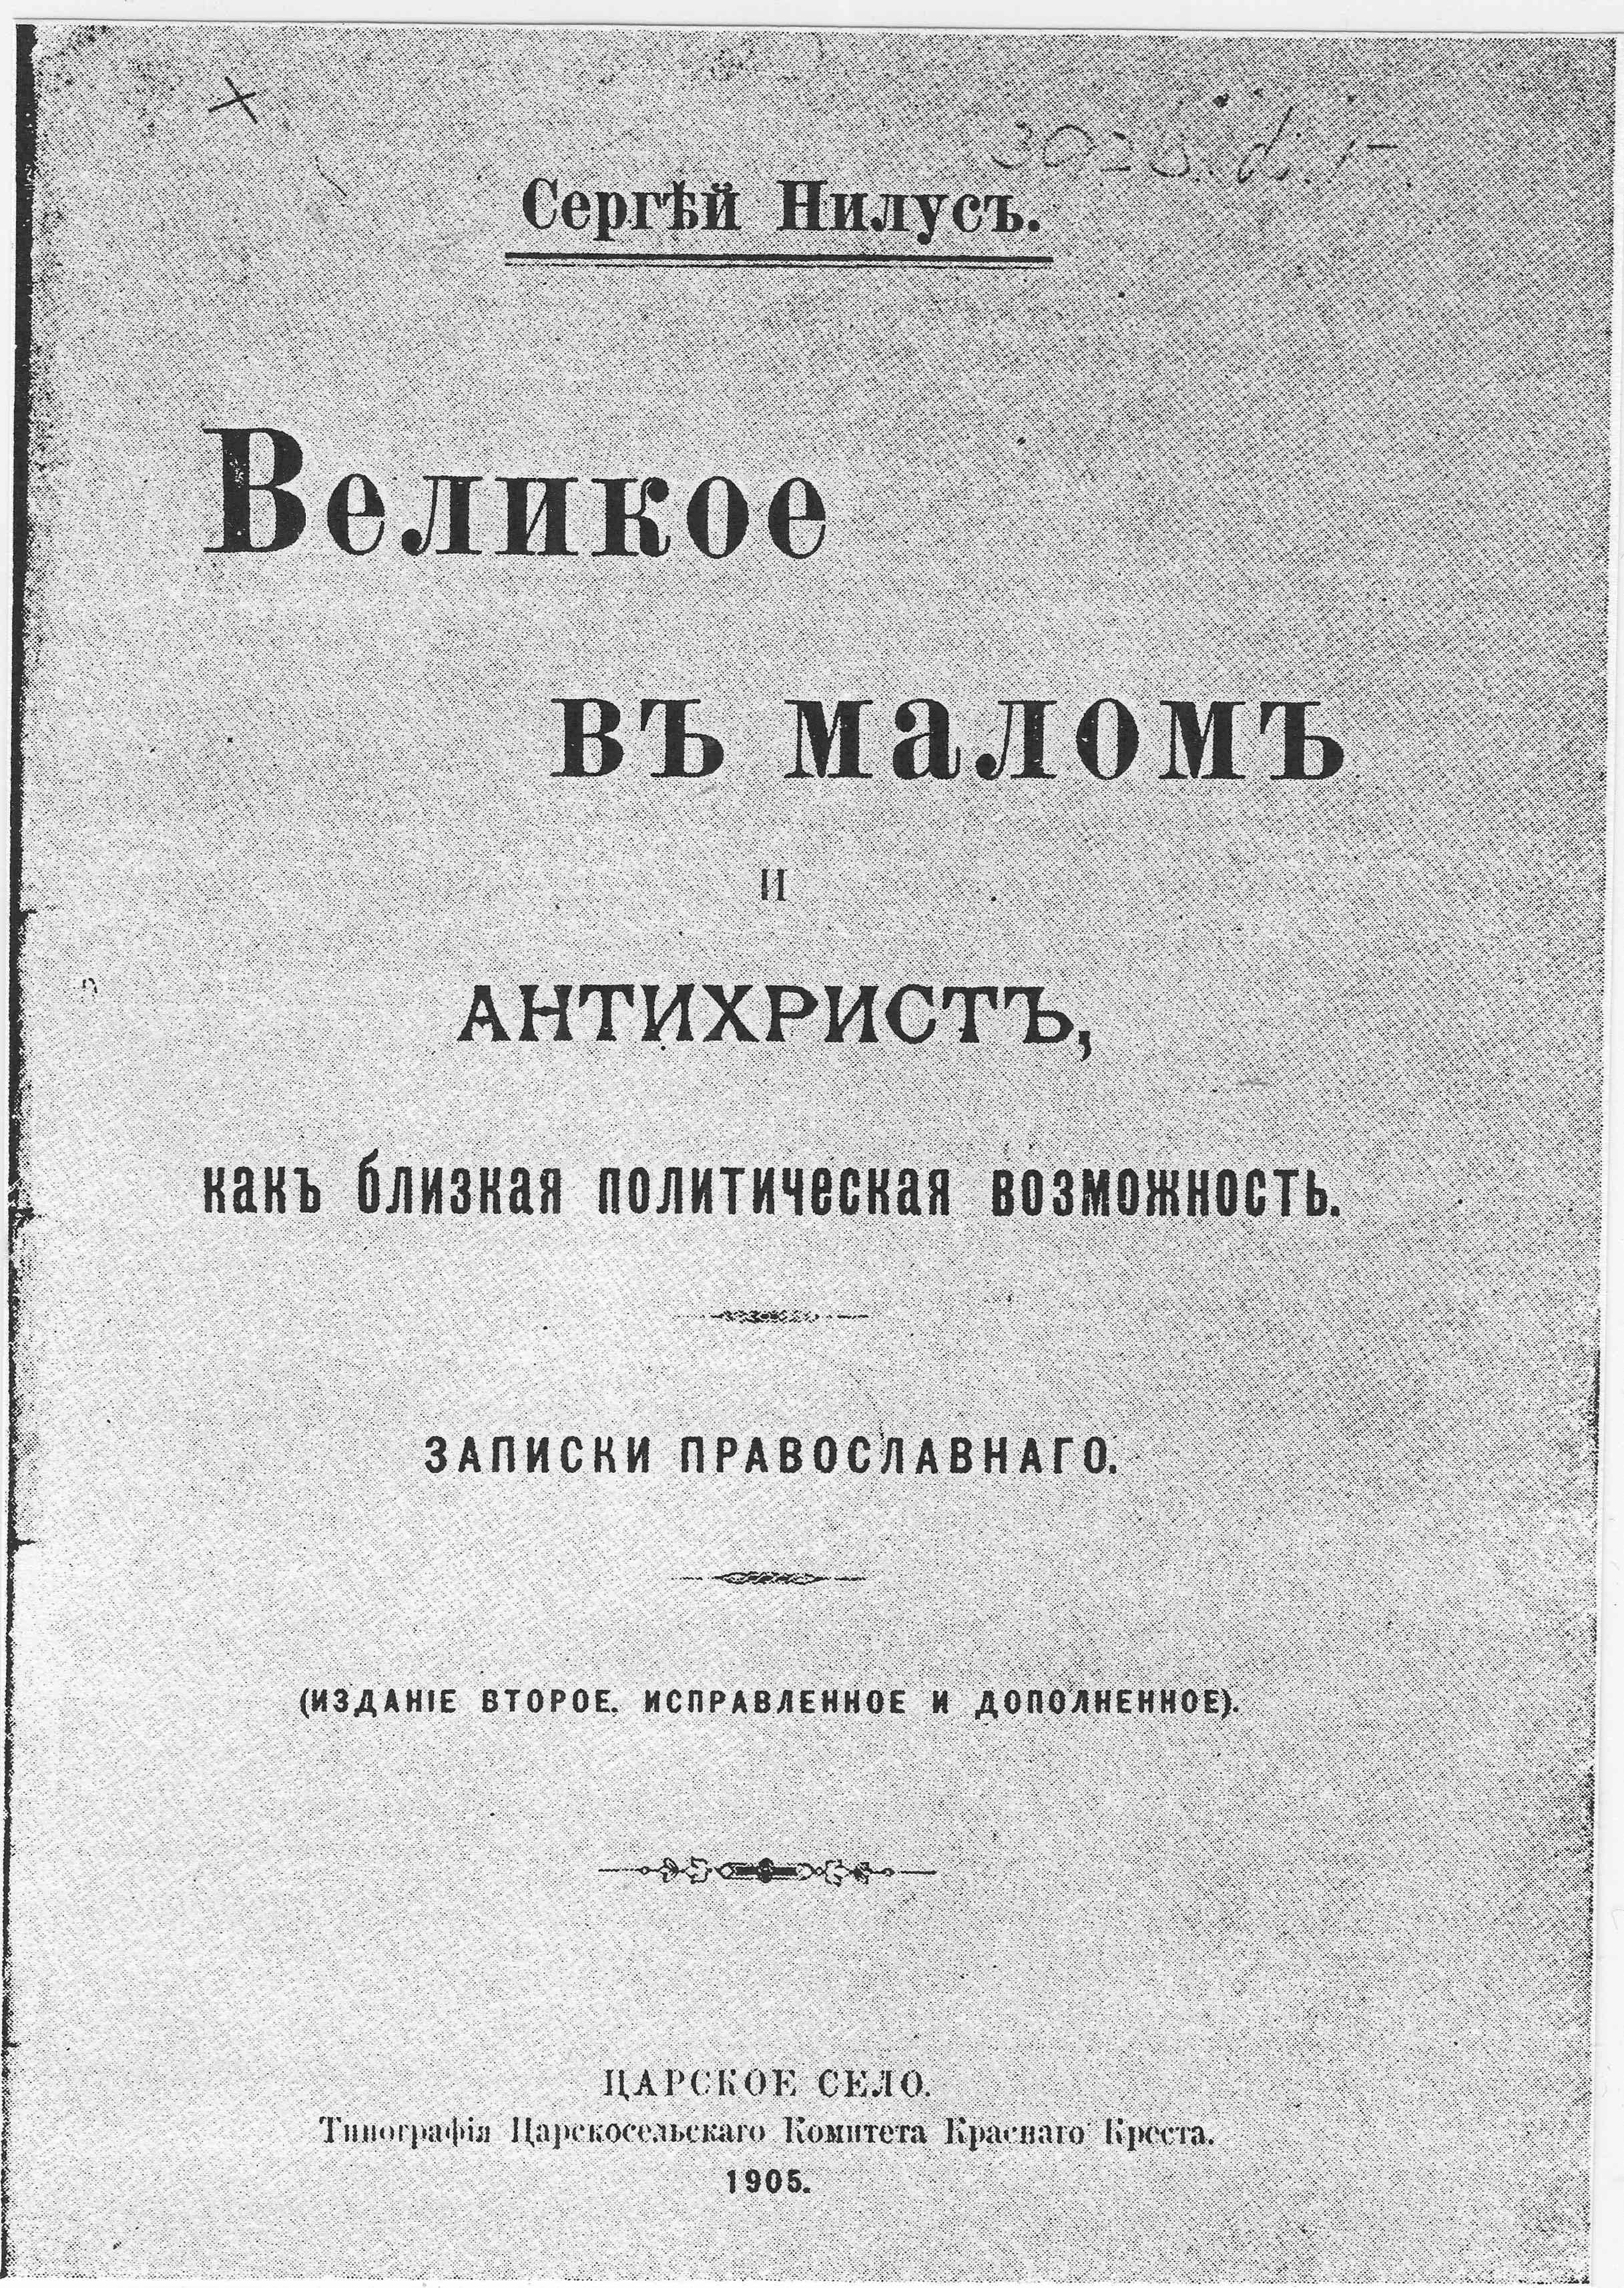 La 2ème édition de 1905 du livre de Nilus Le Grand dans le Petit et l’Antéchrist - une possibilité politique prochaine , intègrant les Protocoles